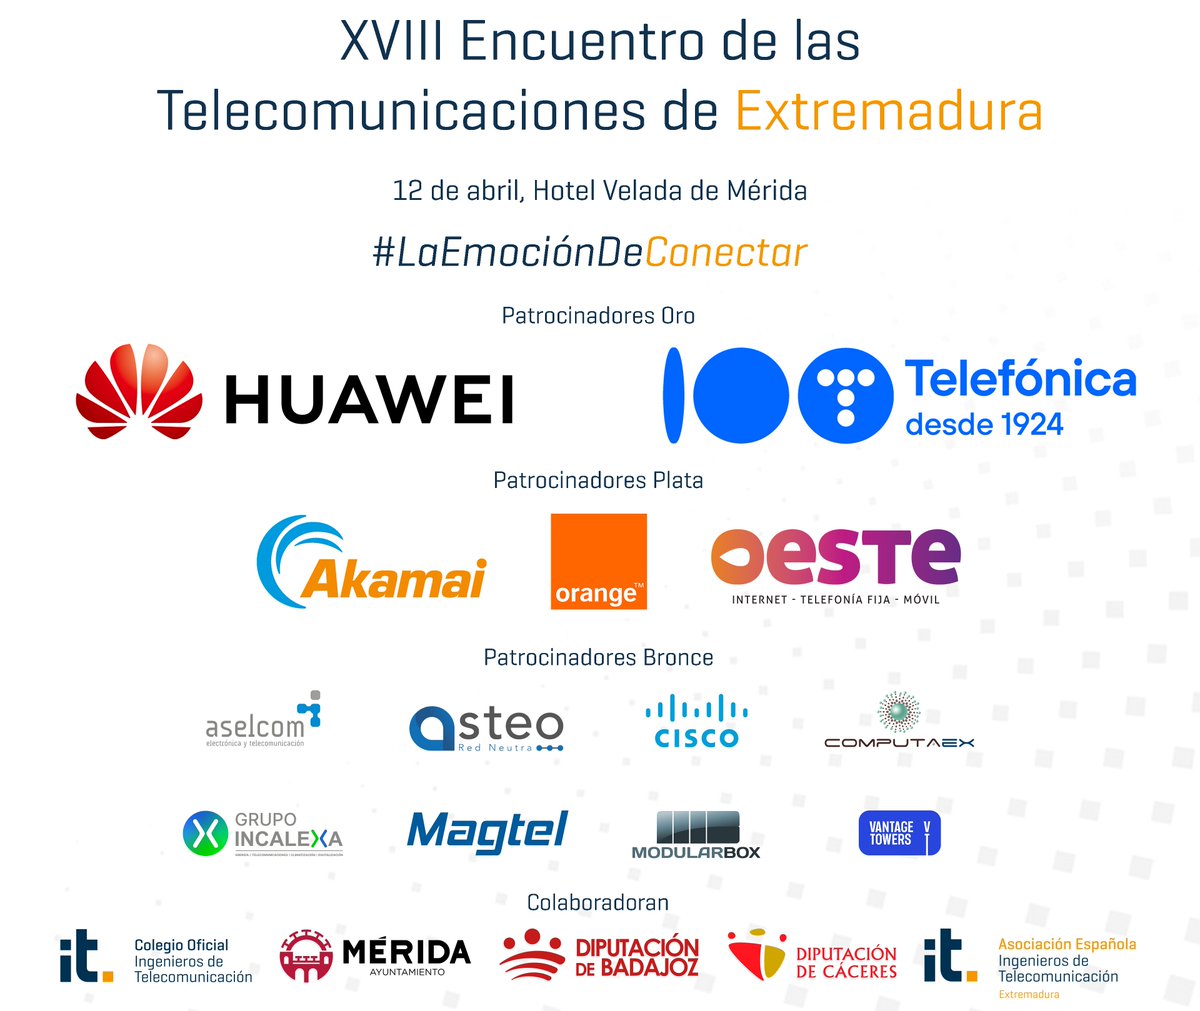 Queda una semana para nuestro encuentro anual. Nos vemos en Mérida para hablar de tecnología, telecomunicaciones y avance digital. @econoempleoEXT @ayto_merida